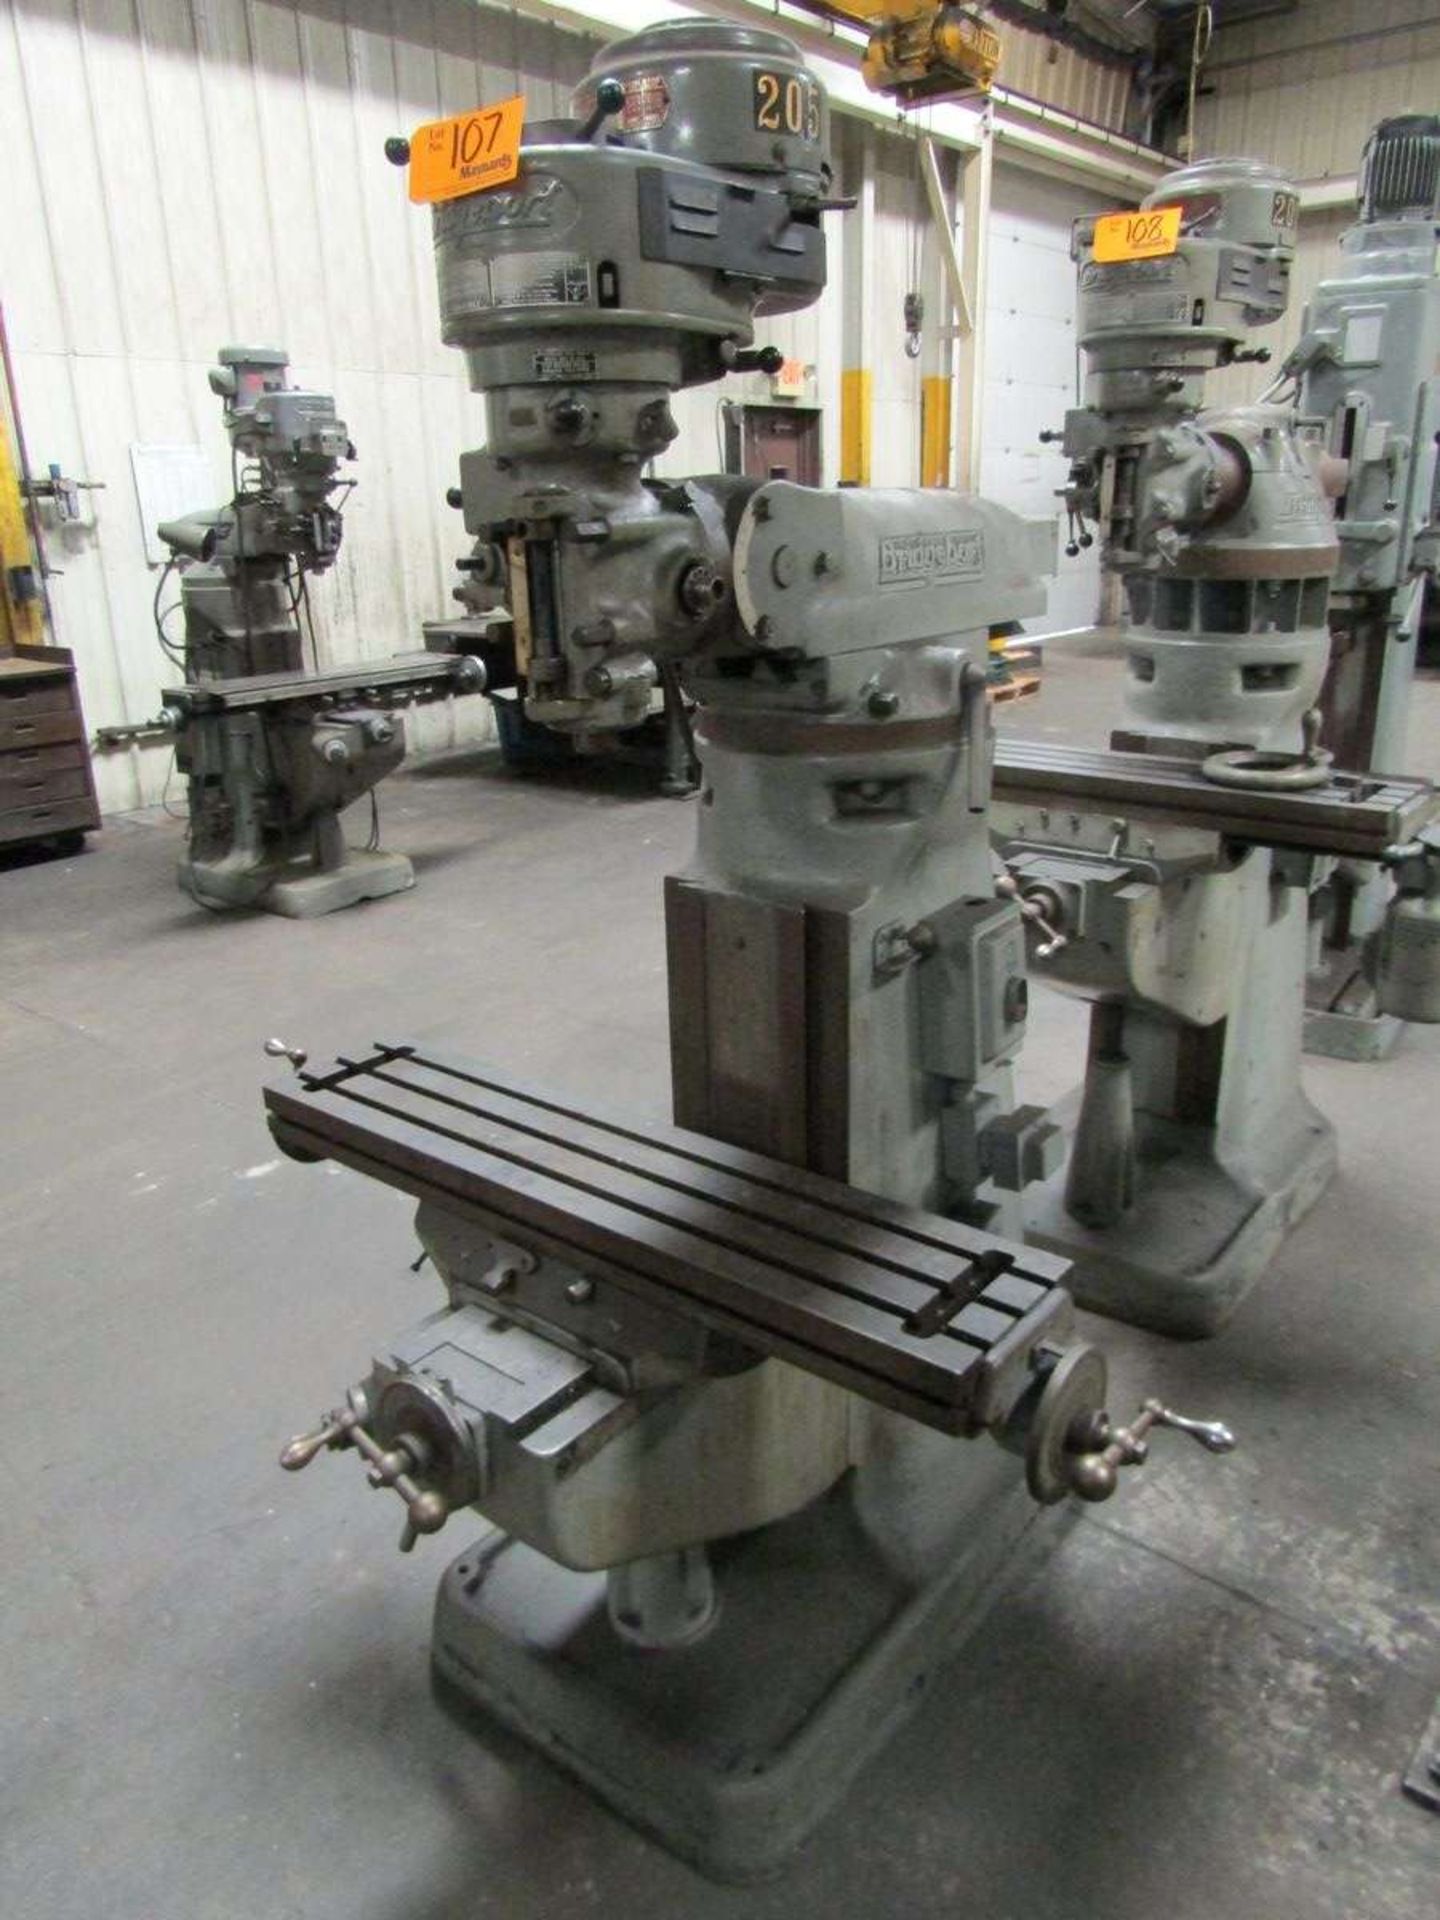 Bridgeport 30471 Vertical Milling Machine - Image 2 of 5